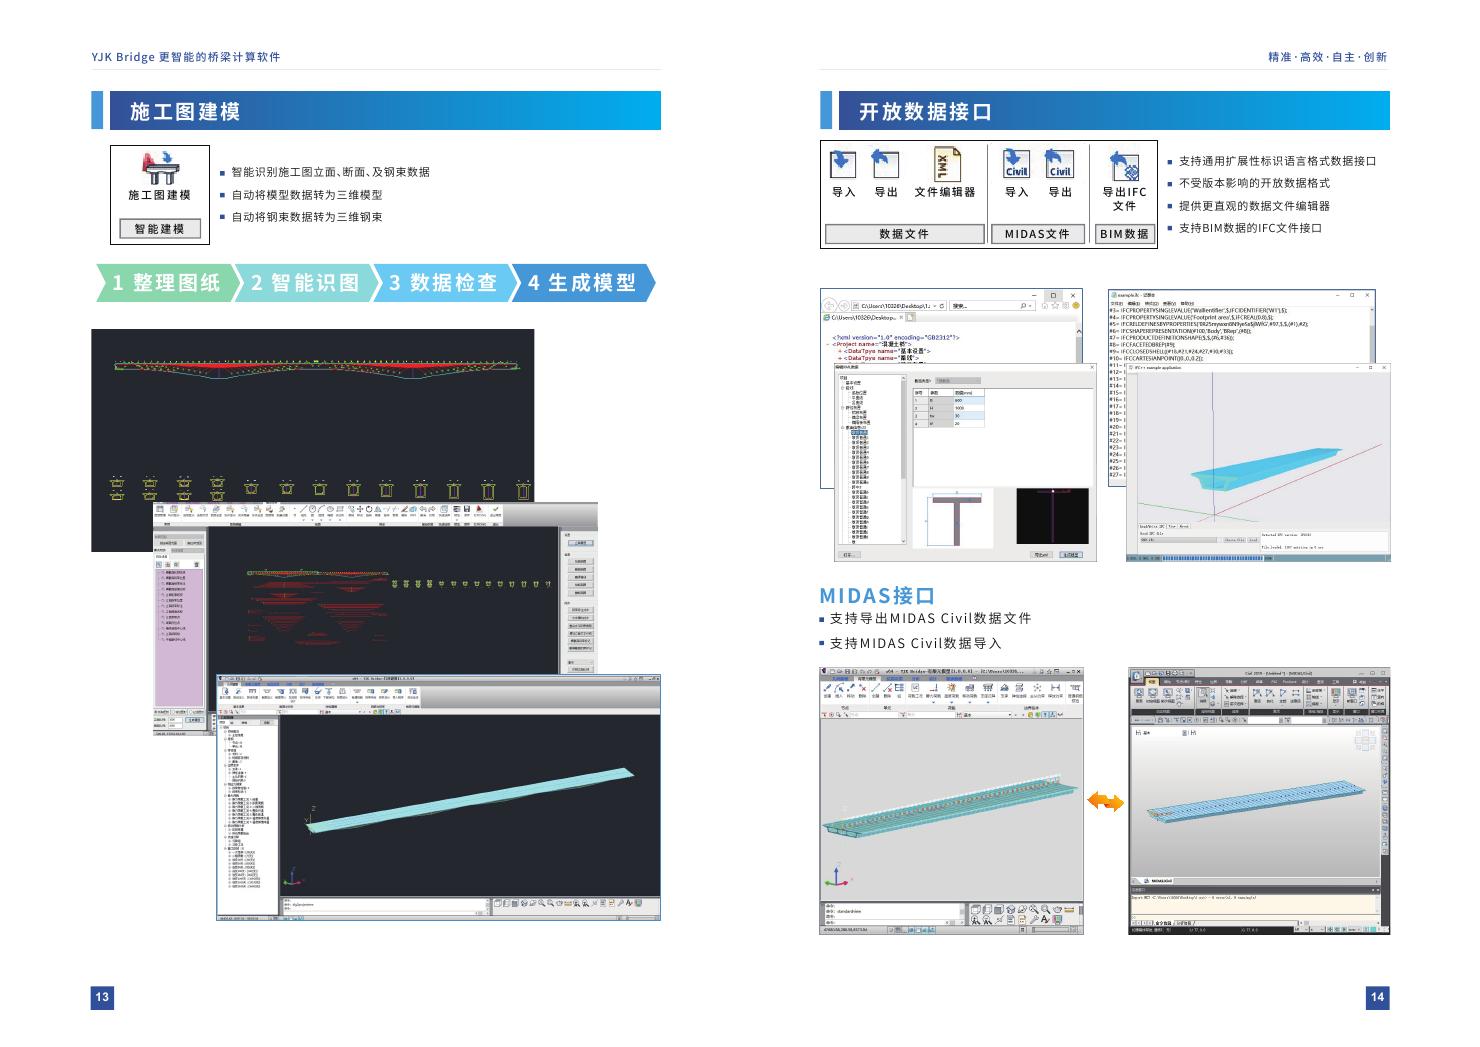 桥梁分析设计软件YJK Bridge0007.jpg